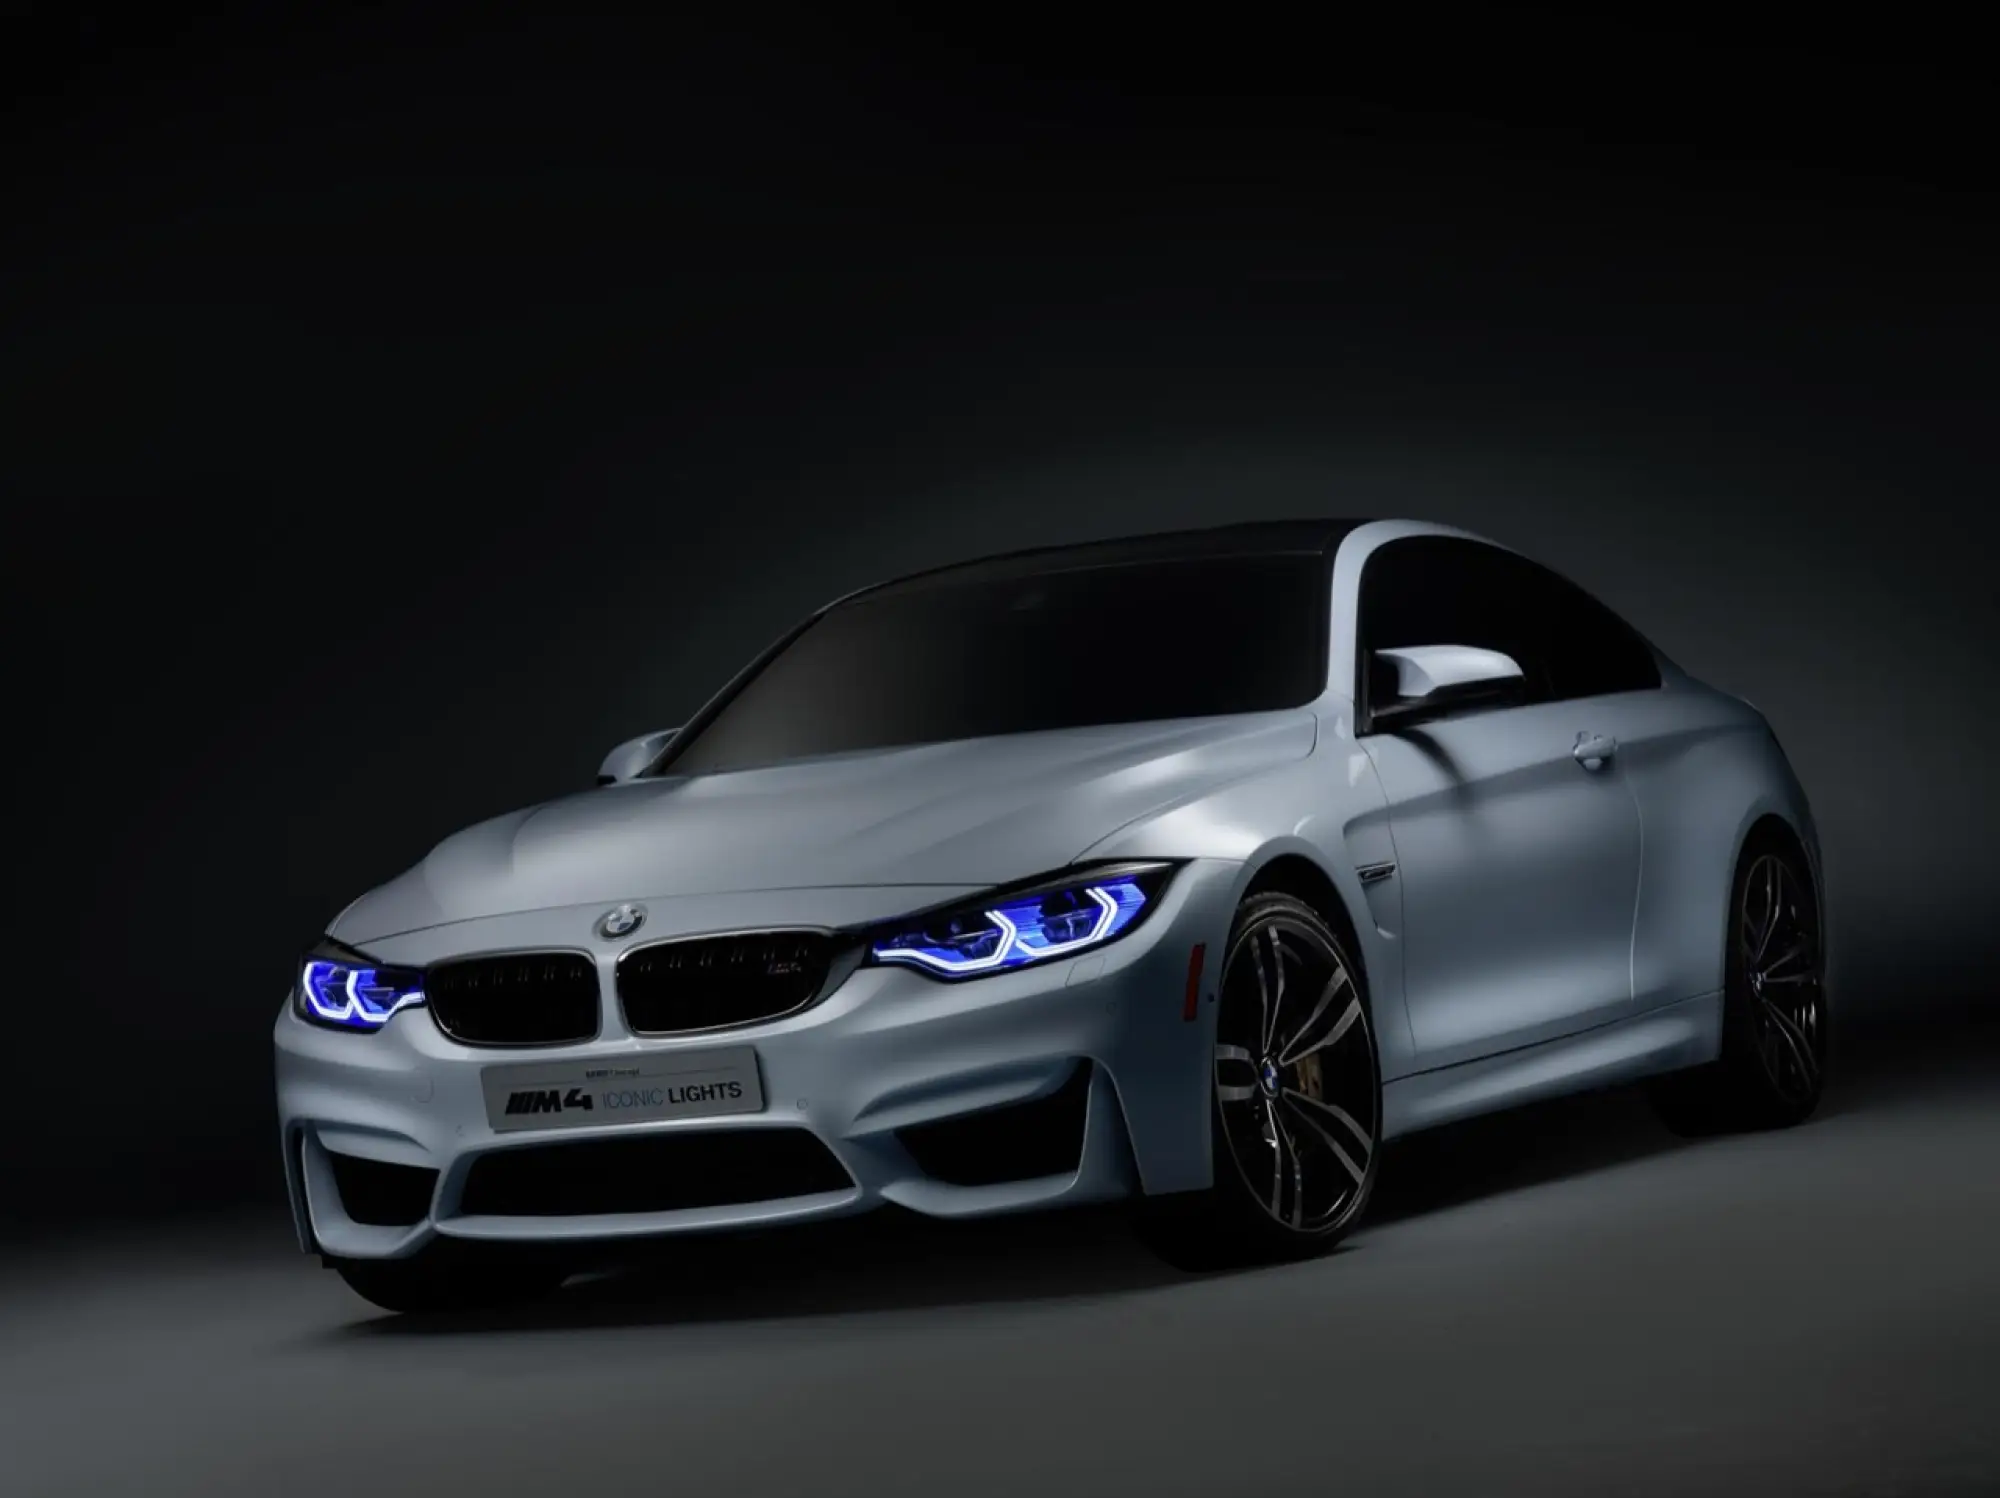 BMW M4 Iconic Lights Concept - CES 2015 - 13